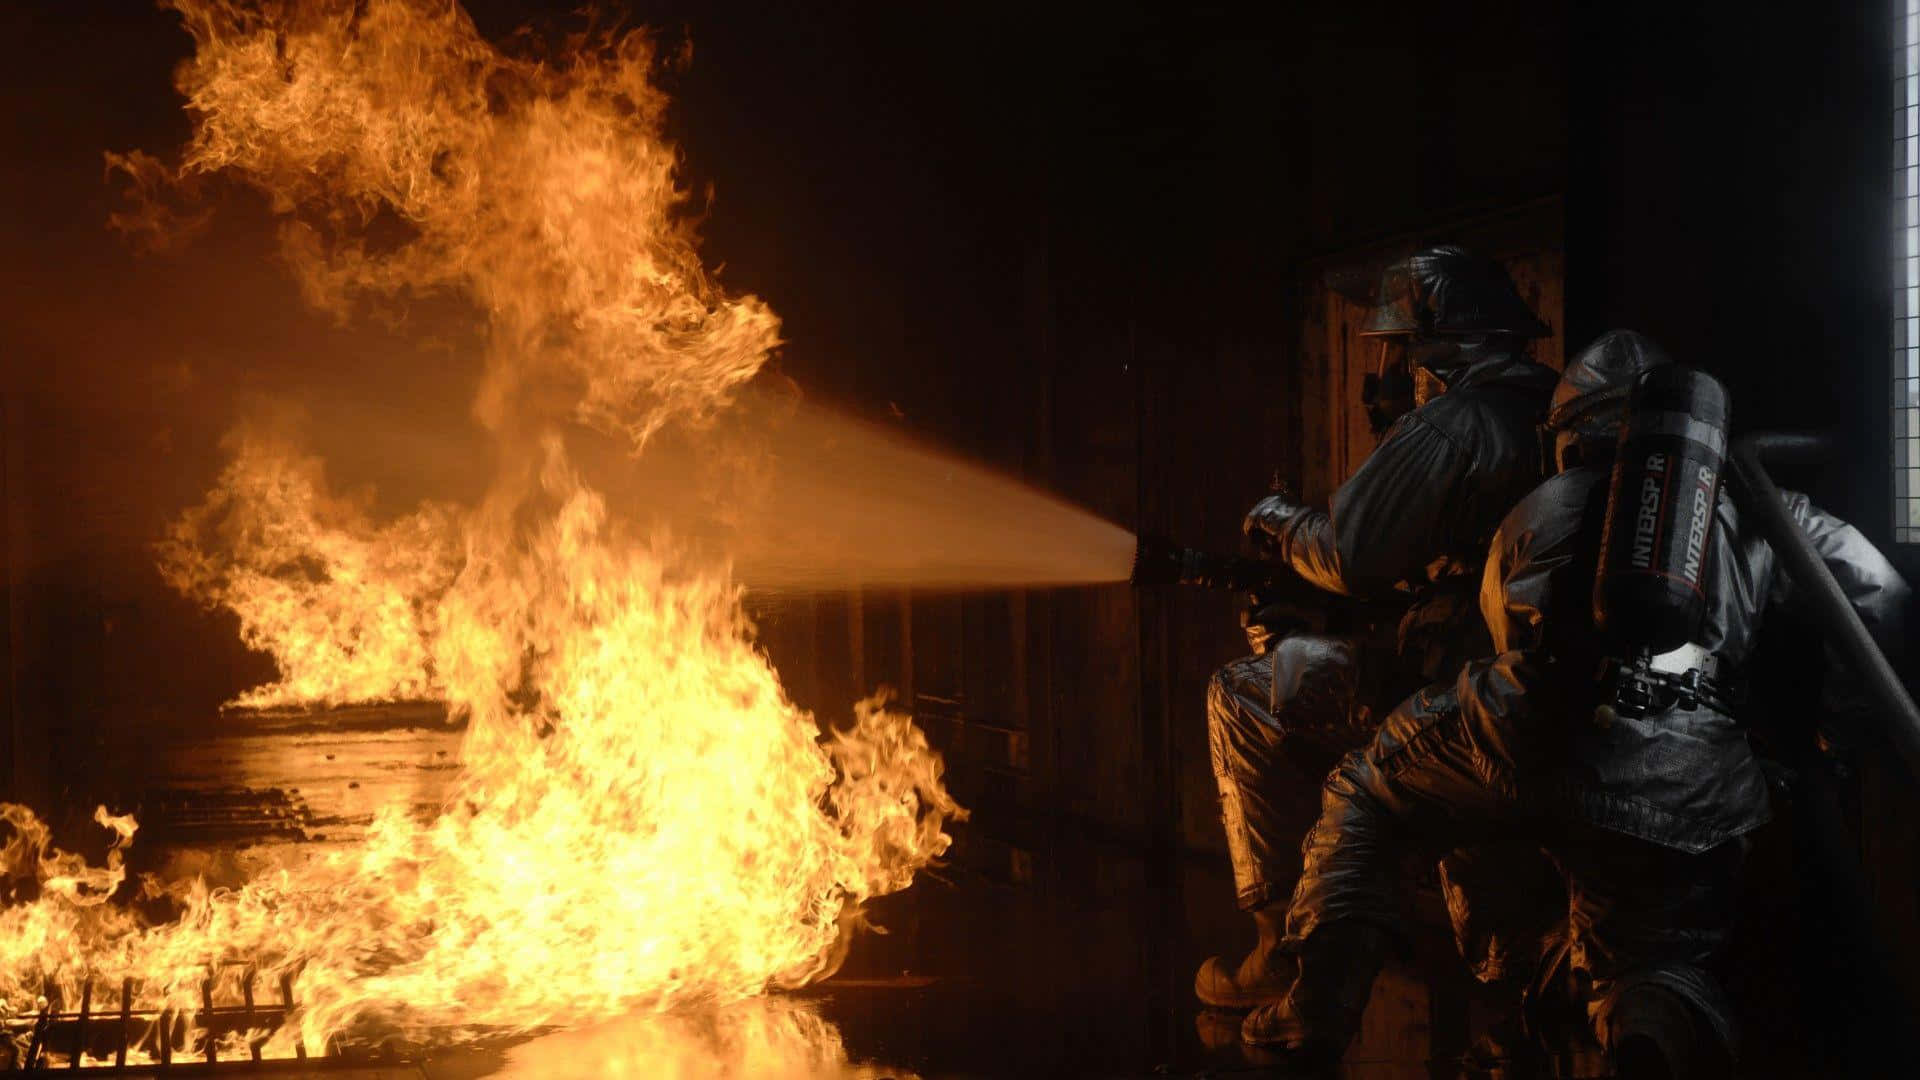 Zweifeuerwehrleute Kämpfen Gegen Ein Feuer In Einem Dunklen Raum.